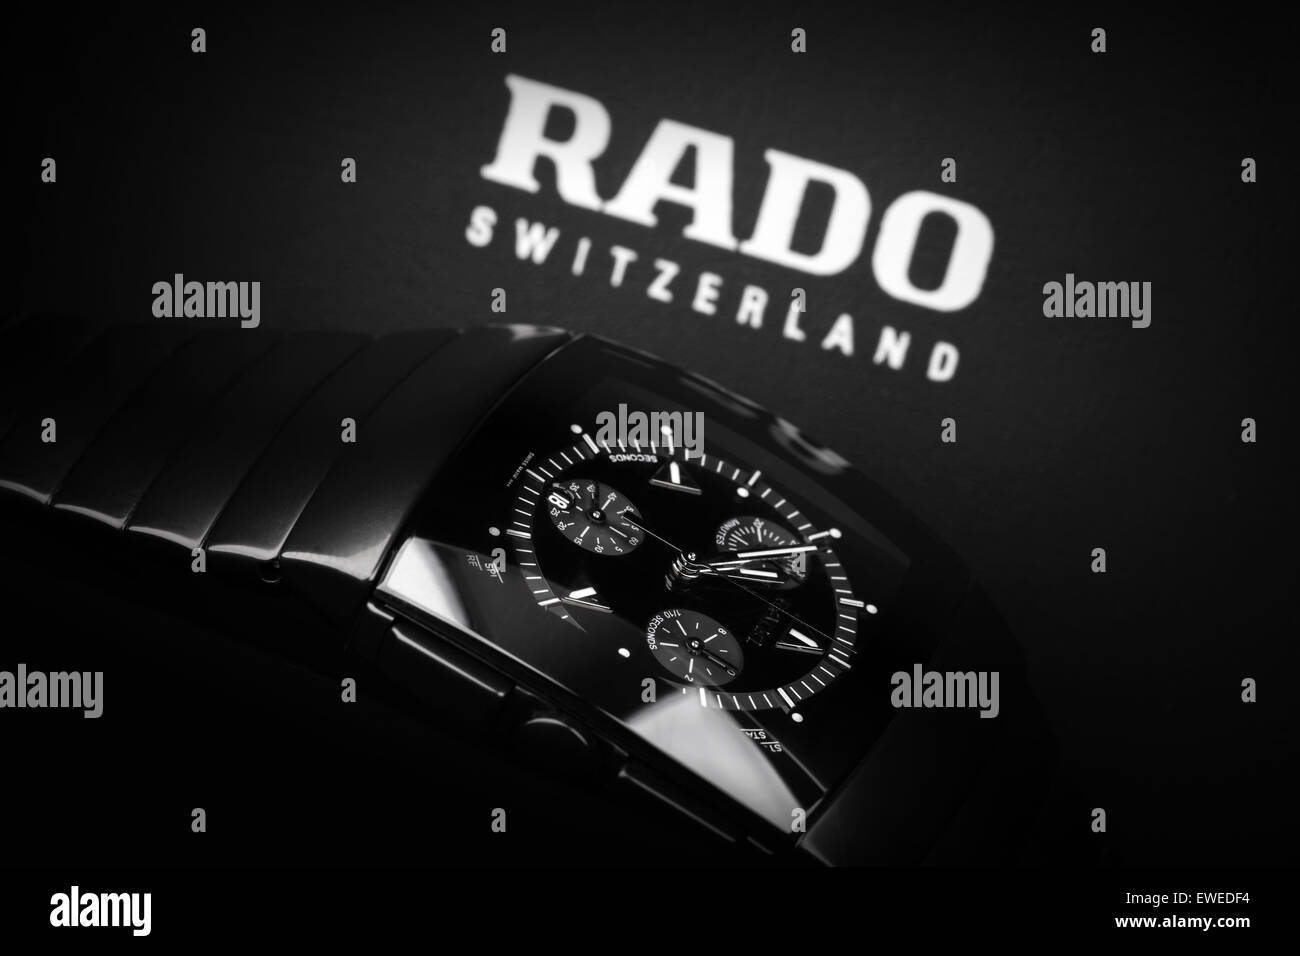 Saint-pétersbourg, Russie - le 18 juin 2015 : Rado Sintra Chrono Montre chronographe pour hommes, fait de la céramique high-tech Banque D'Images